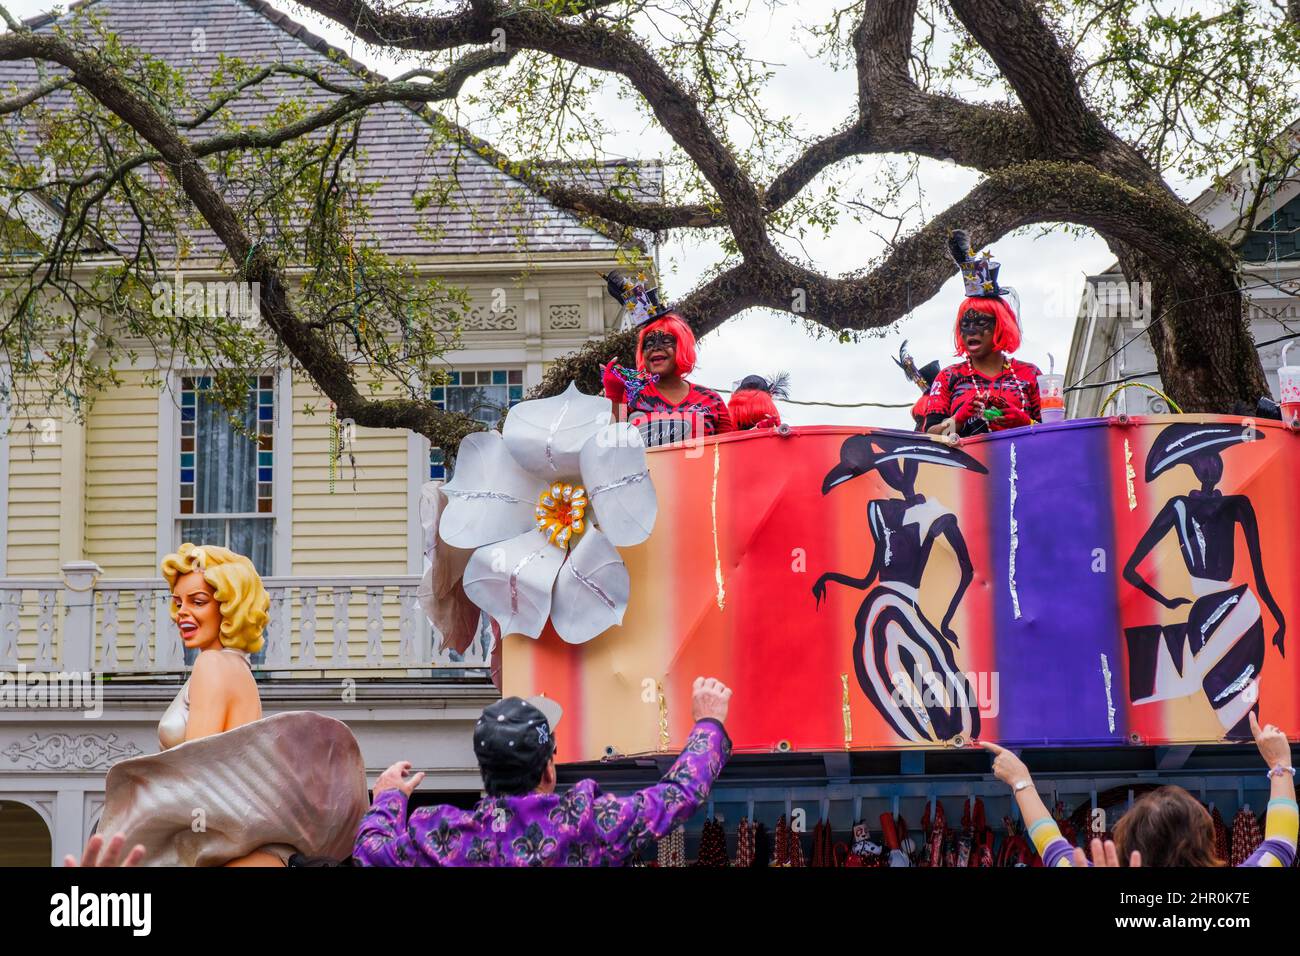 NEW ORLEANS, LA, USA - 20. FEBRUAR 2022: Femme Fatale Parade mit Fahrern passiert Häuser und winkende Zuschauer auf der St. Charles Avenue Stockfoto